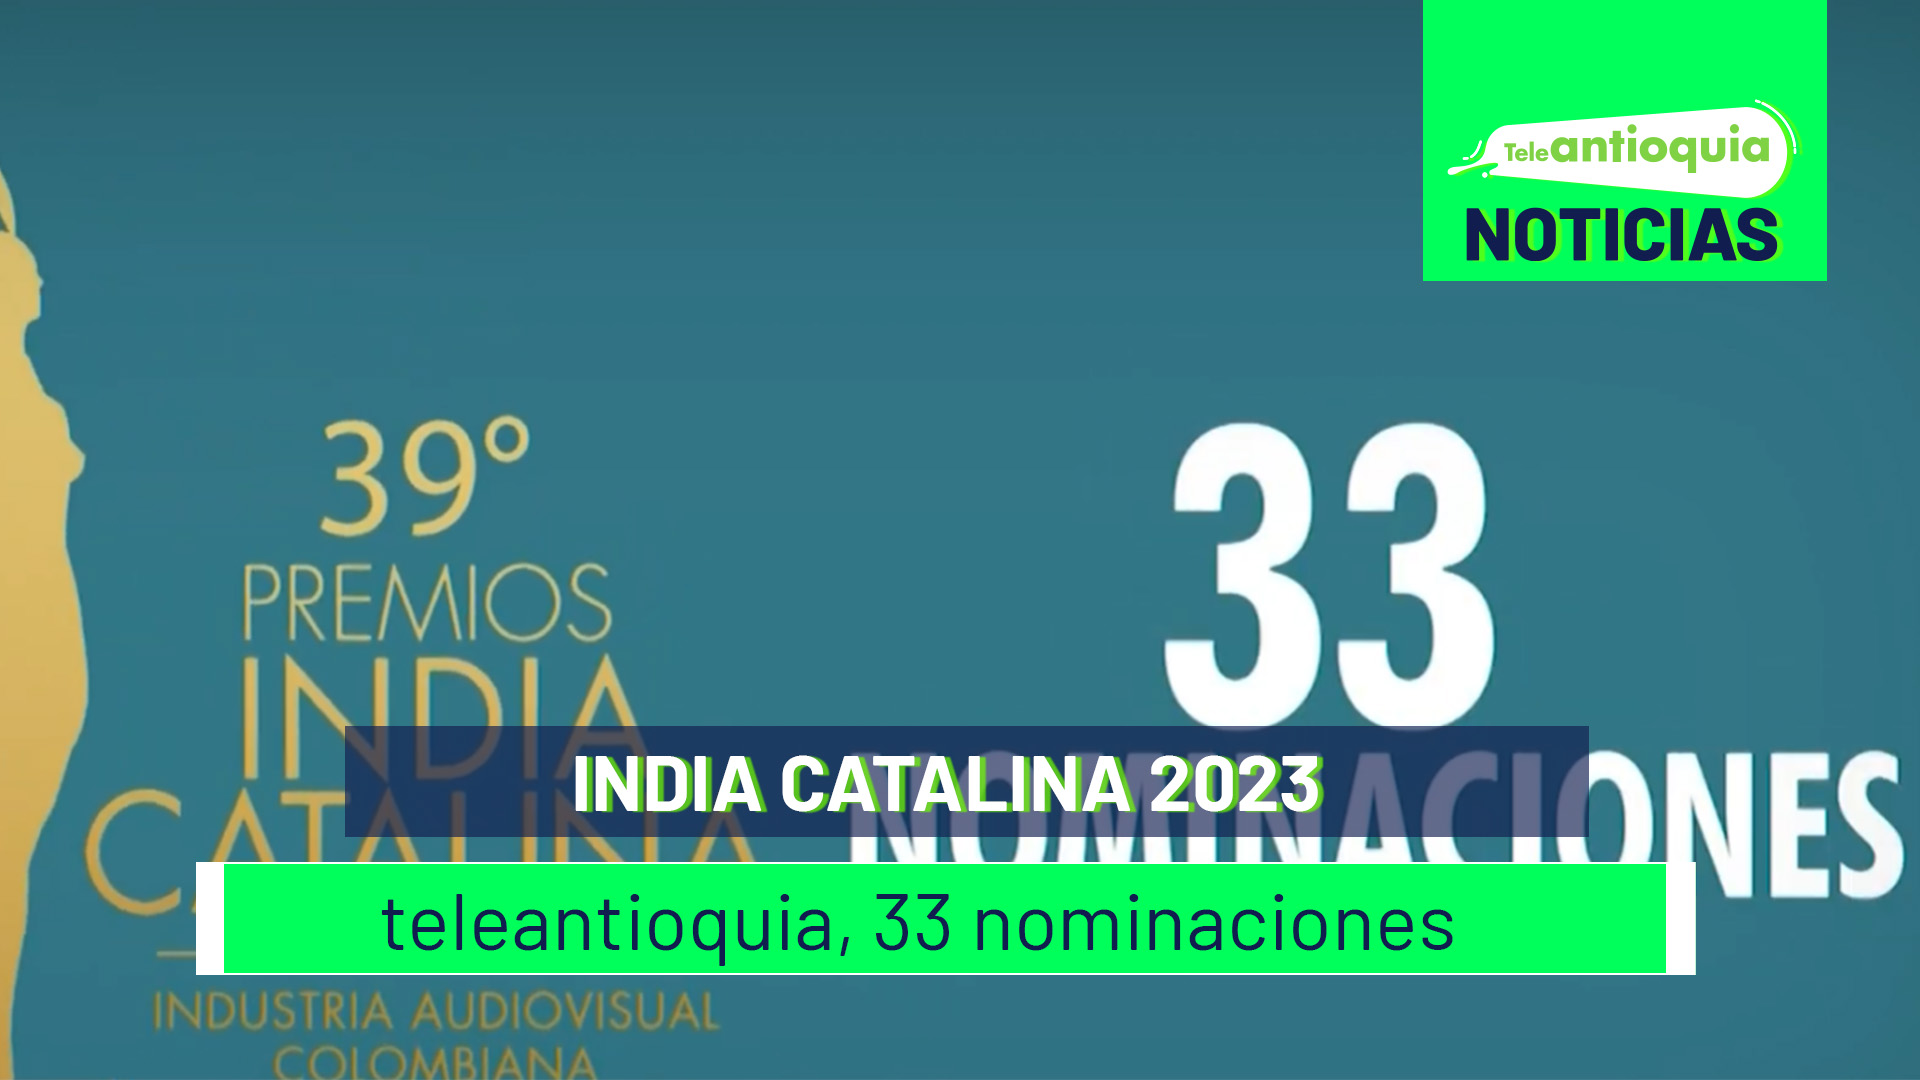 India Catalina 2023 teleantioquia, 33 nominaciones